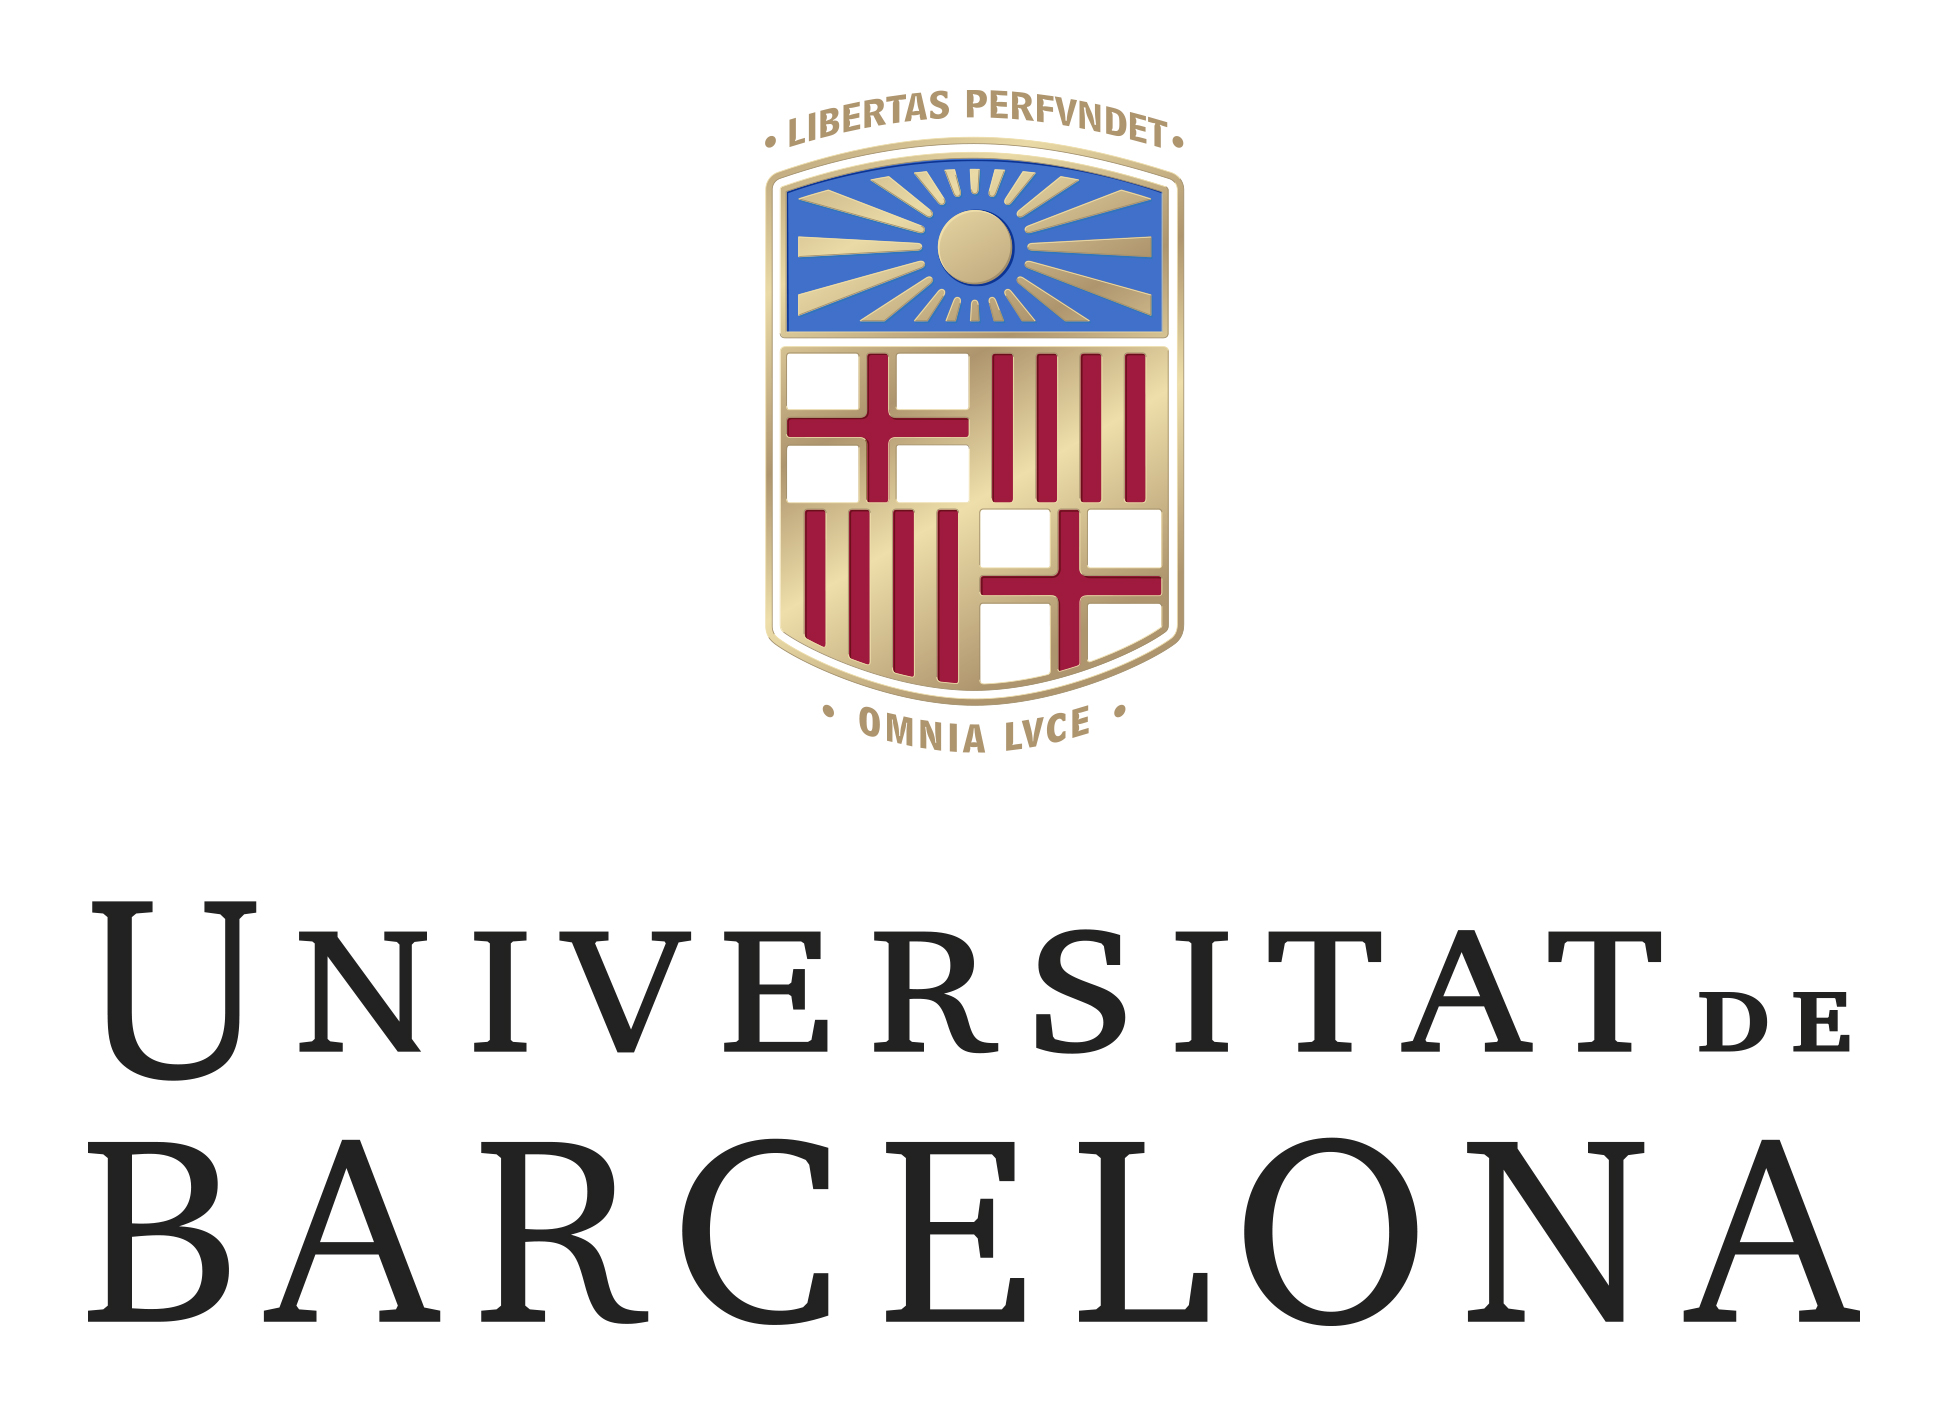 La Universitat de Barcelona vuelve a ser la primera clasificada en el ranking de las universidades mejores posicionadas del estado, según webometrics